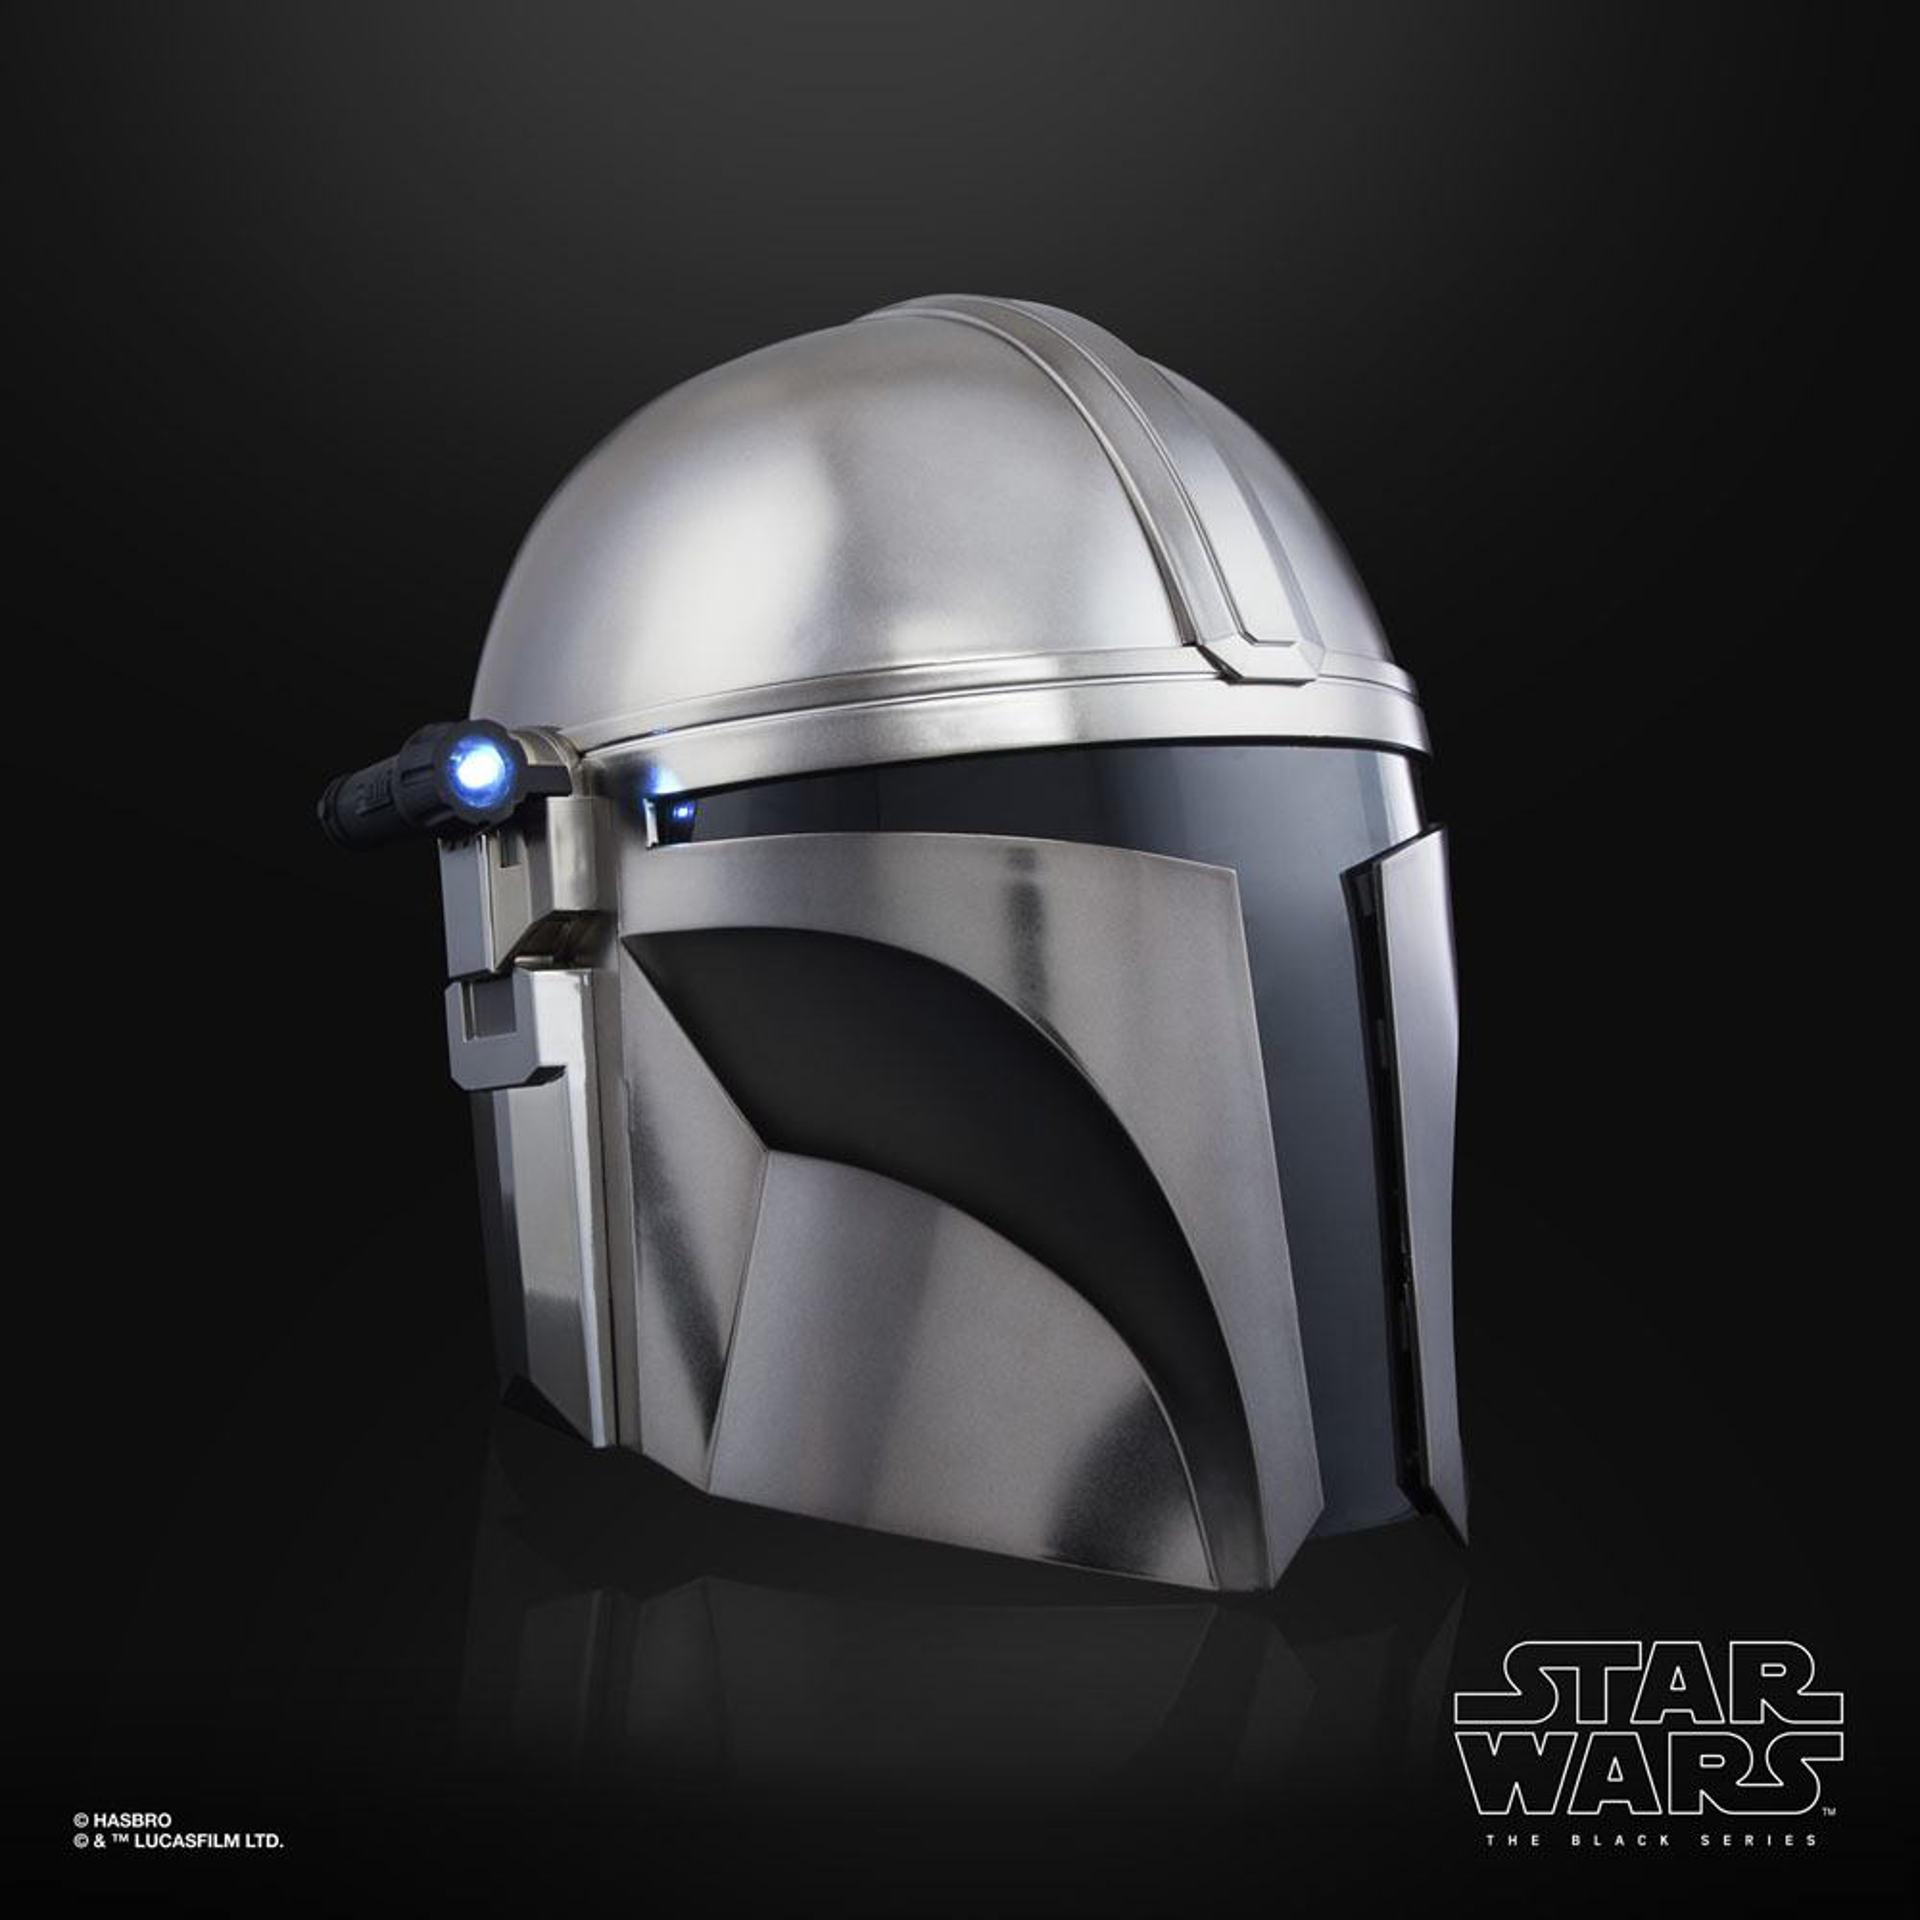 Star Wars The Black Series - Réplique 1/1 électronique du casque du Mandalorian